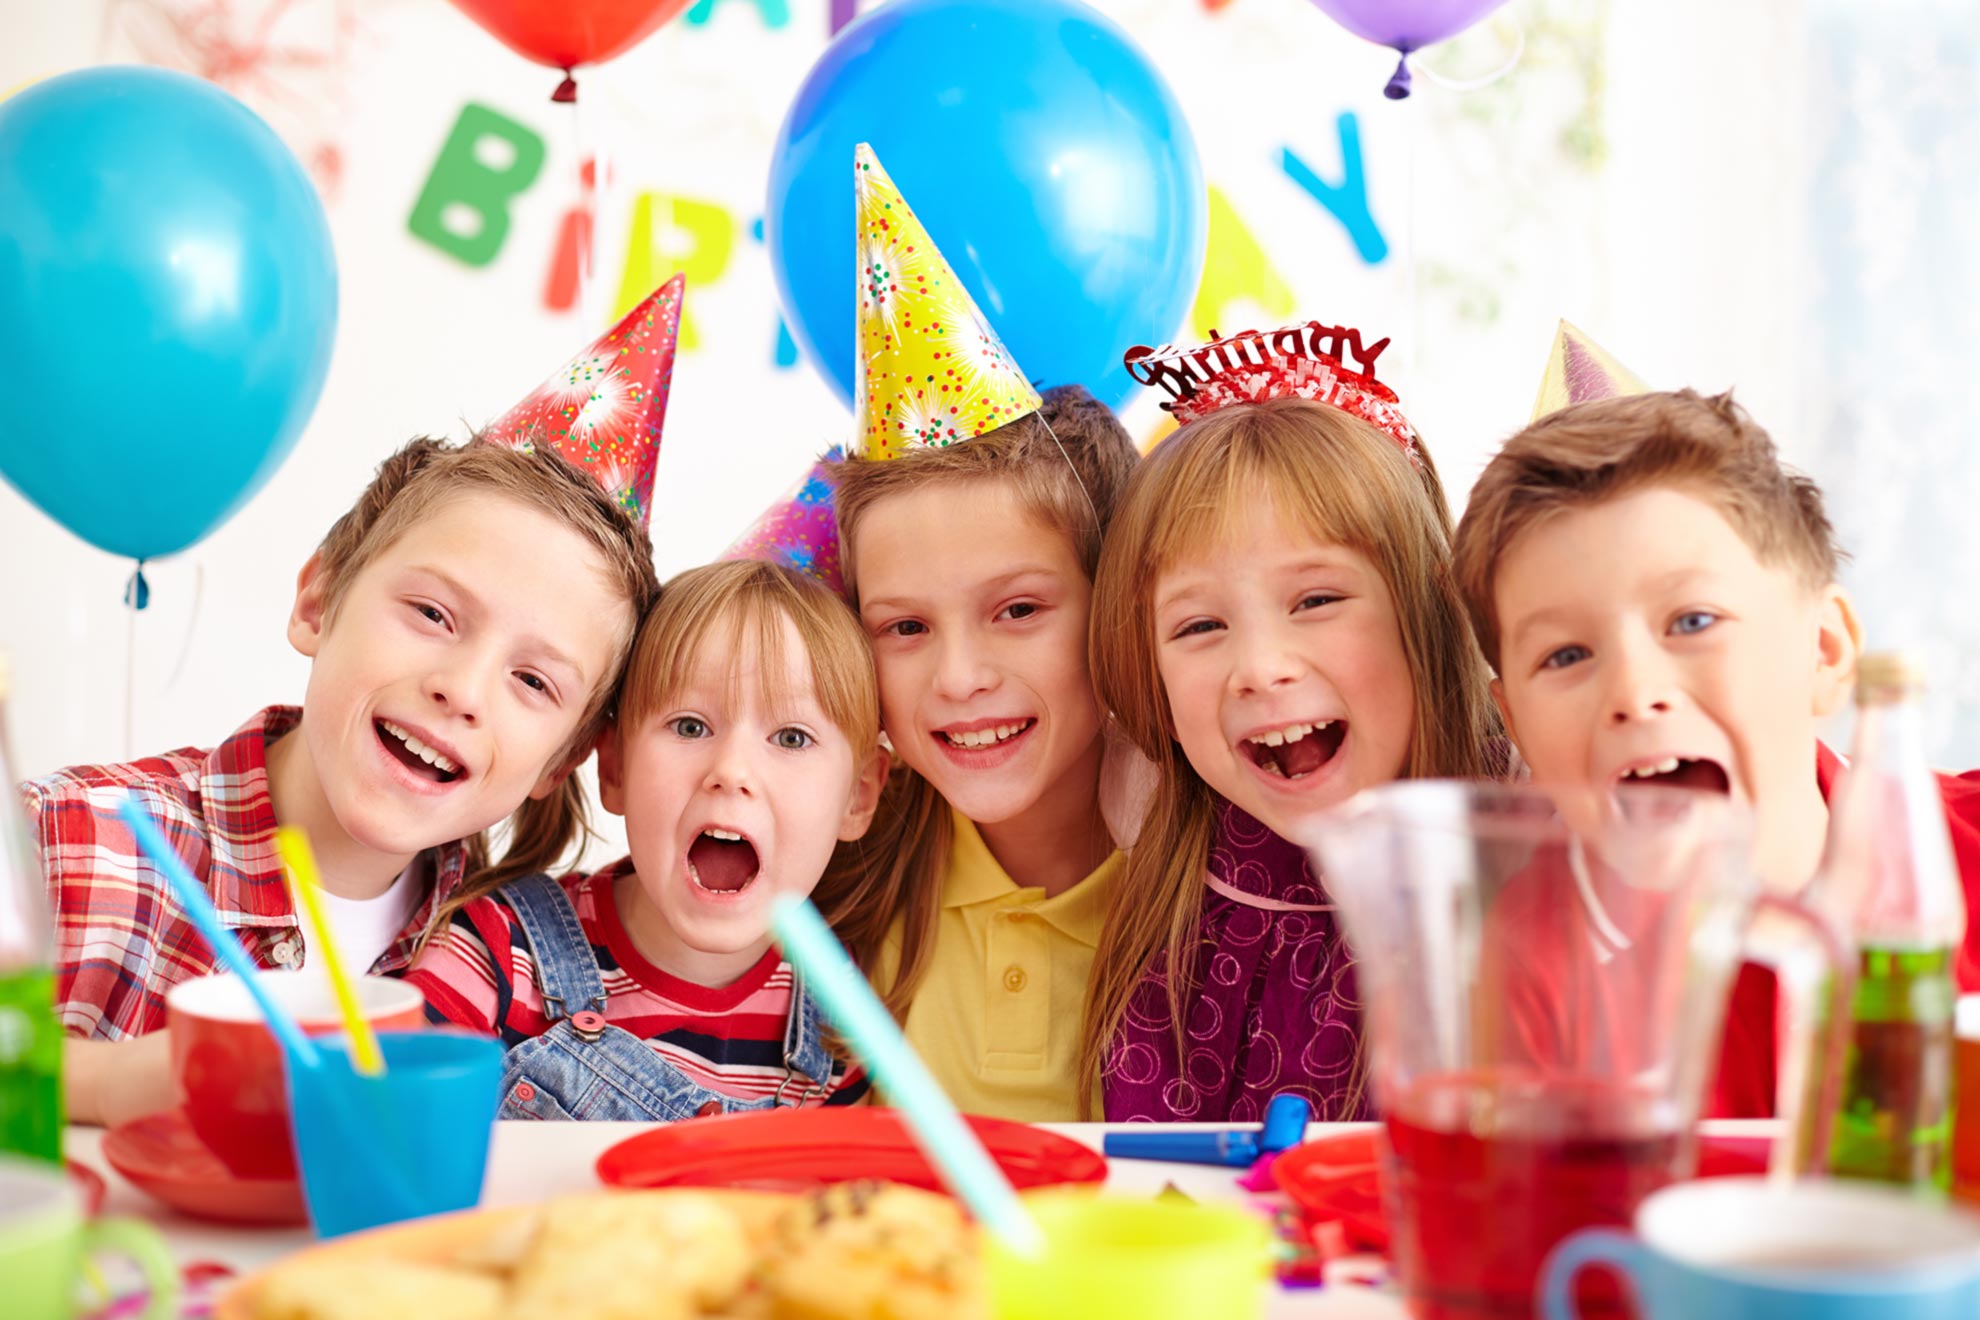 5 dicas para fazer o bolo de aniversário do seu filho - Revista